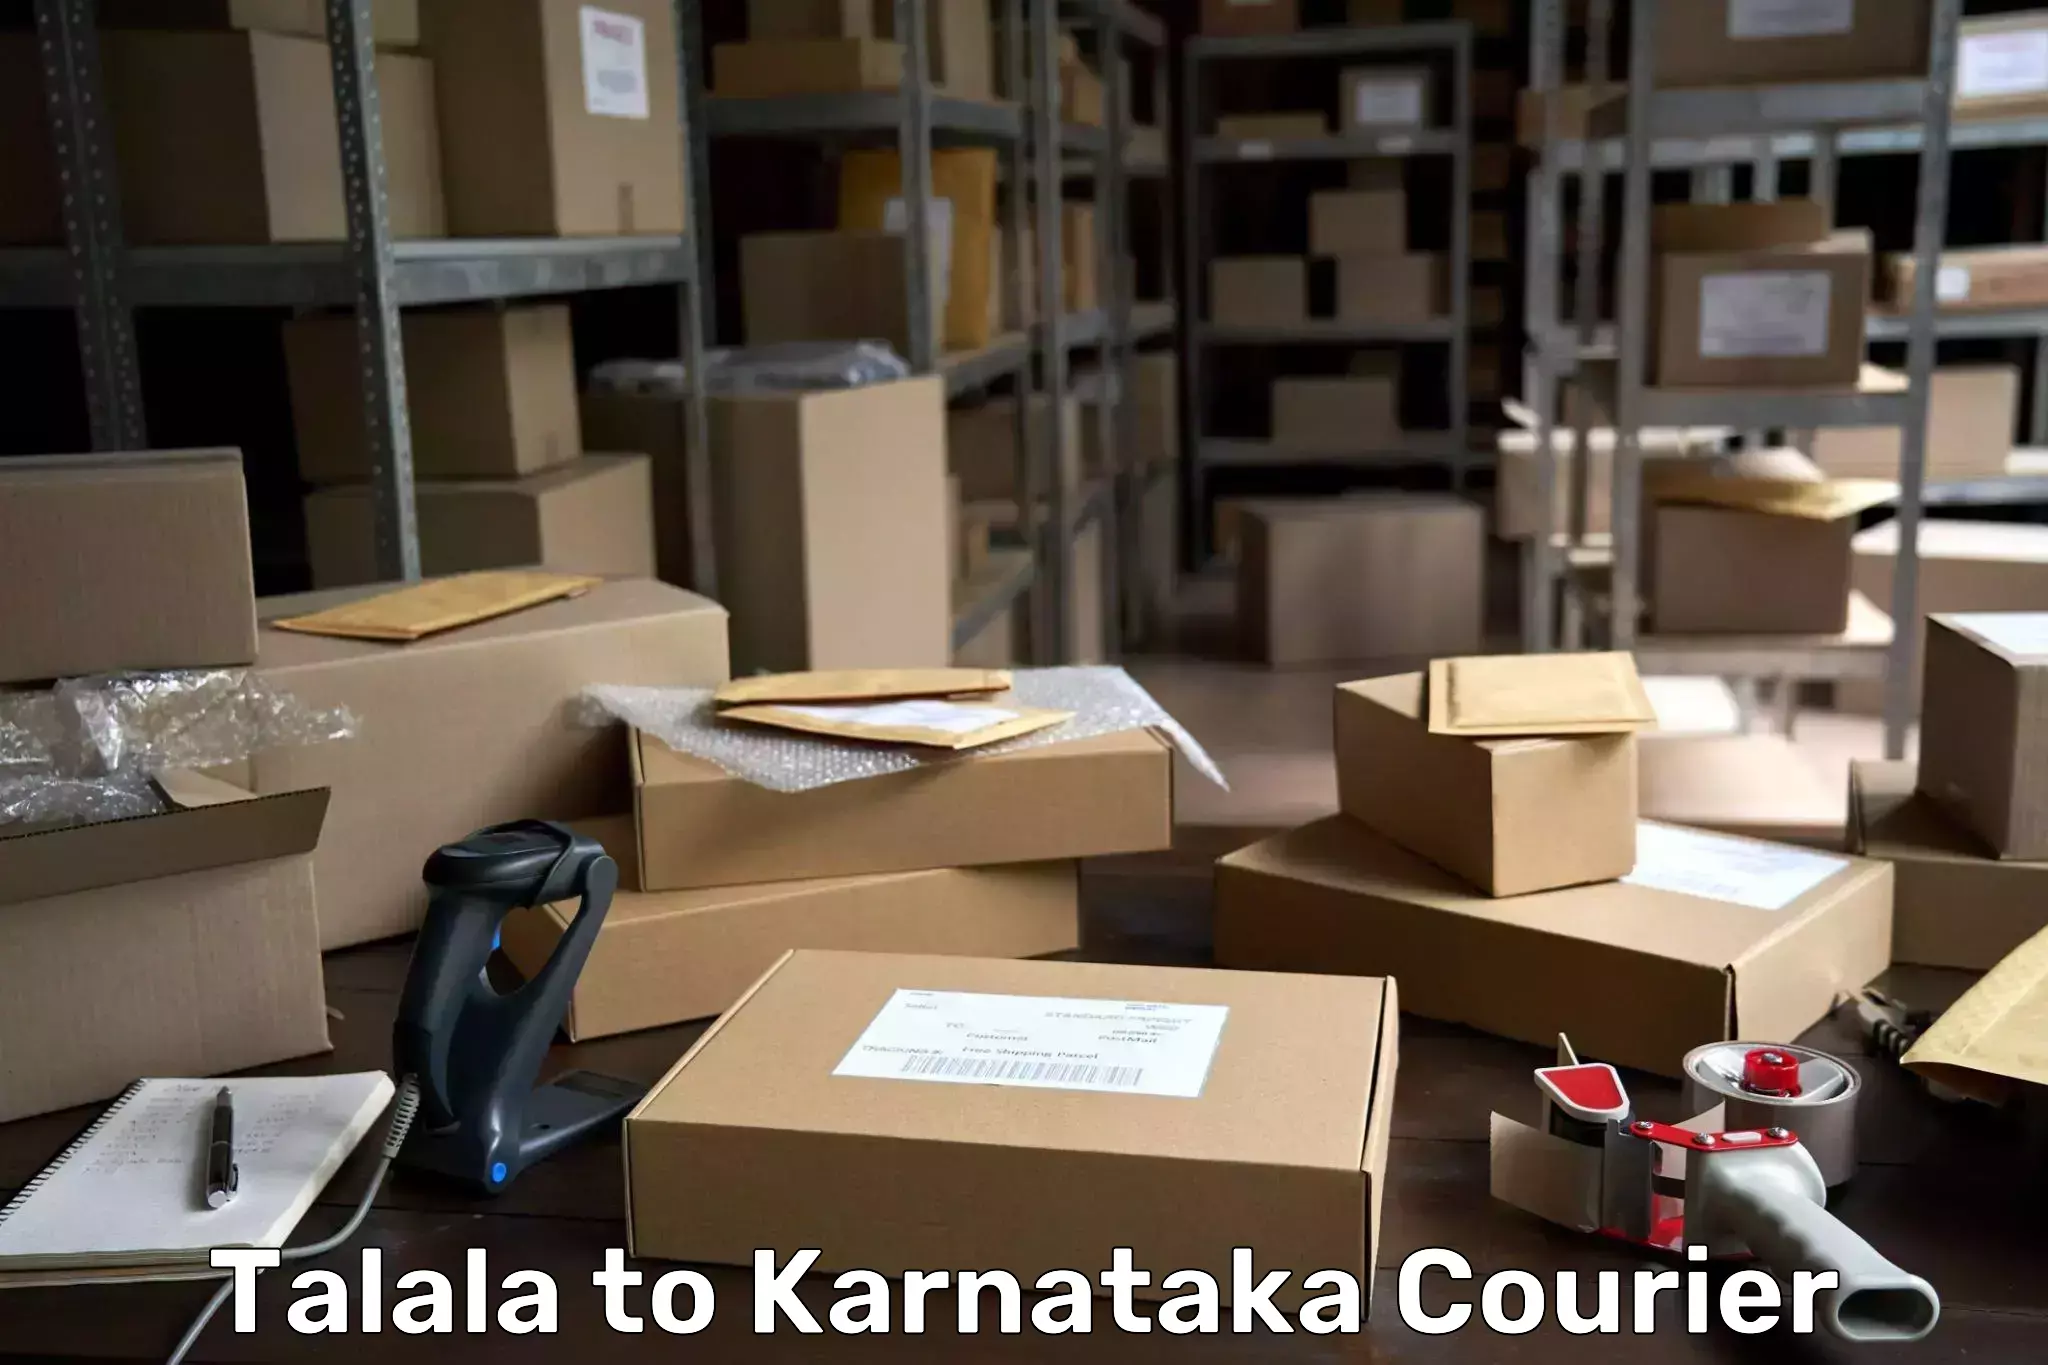 Cargo delivery service Talala to Karnataka